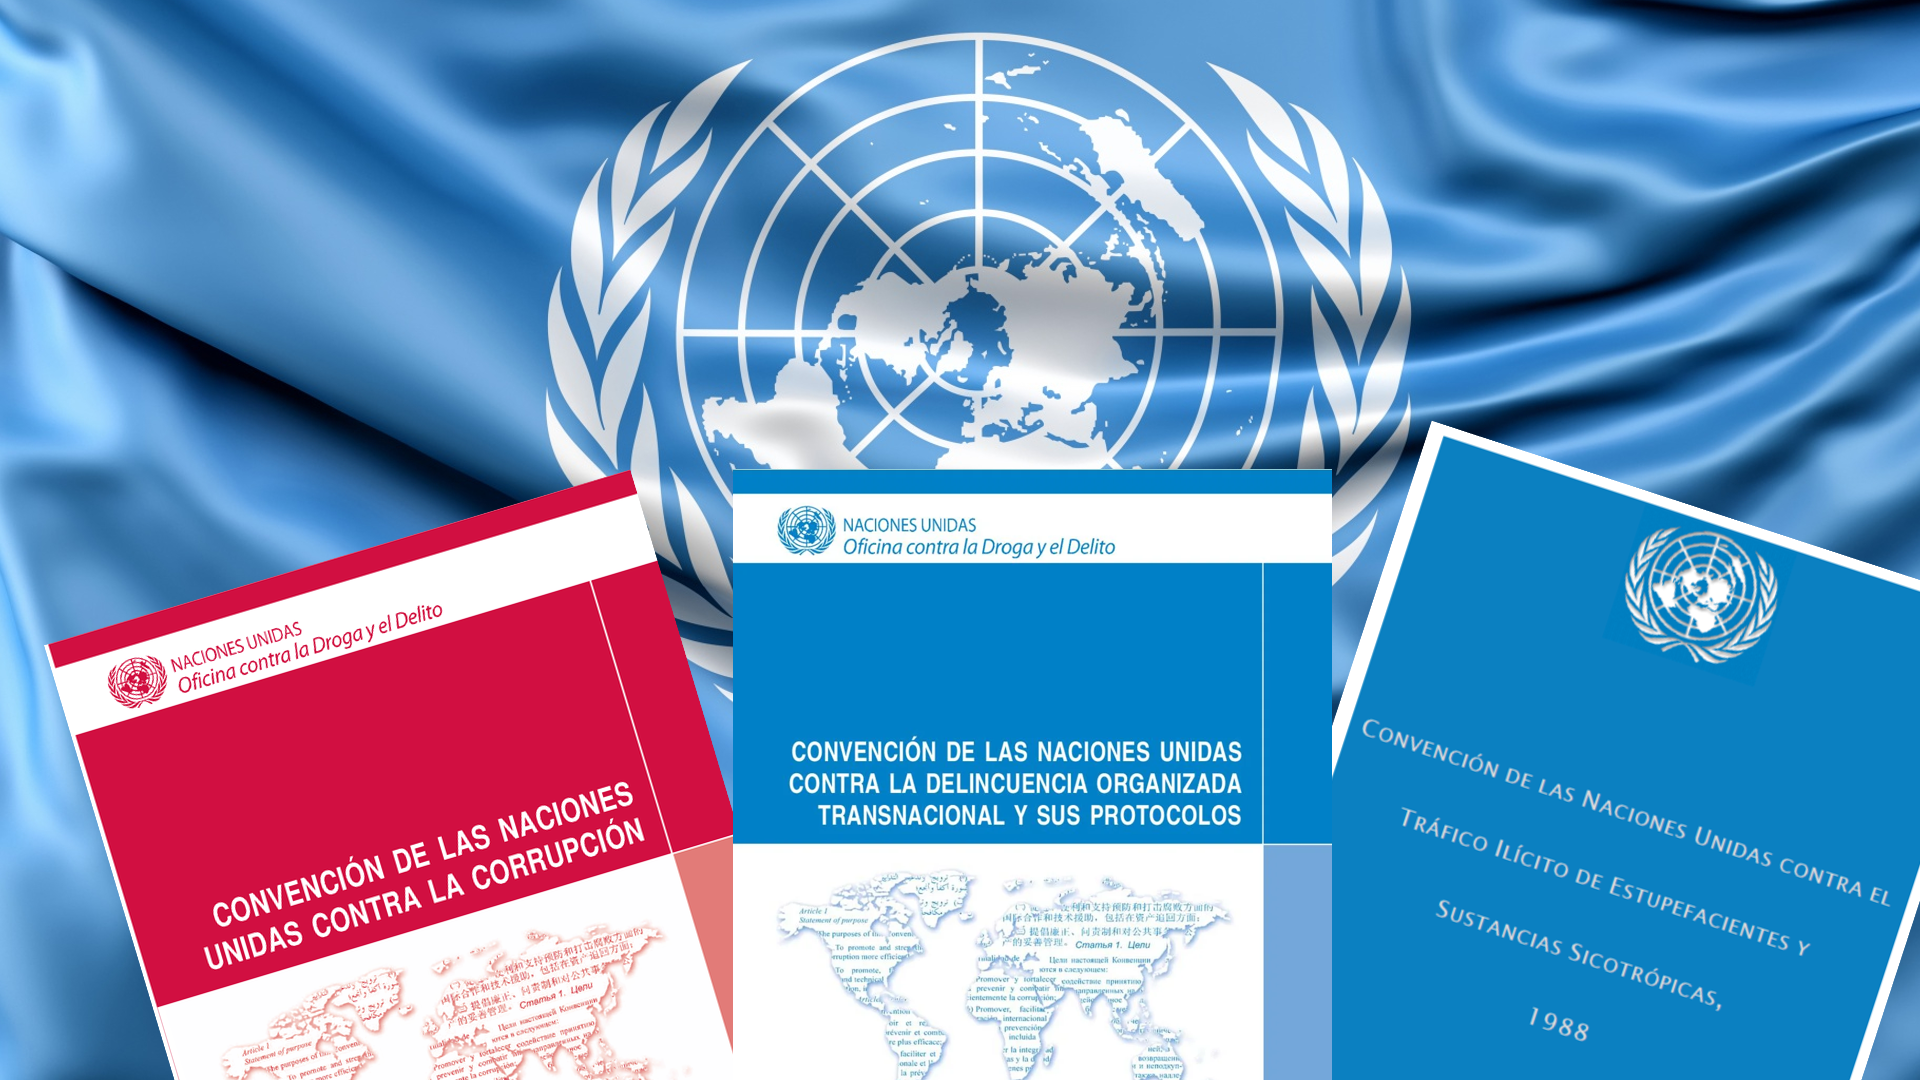 Portadas de las tres convenciones que custodia UNODC: Convención de Naciones Unidas contra la Delincuencia Organizada Transnacional, Convención de Naciones Unidas contra la Corrupción y Convención de Naciones Unidas contra el Tráfico Ilícito de Estupefacientes y Sustancias Sicotrópicas.